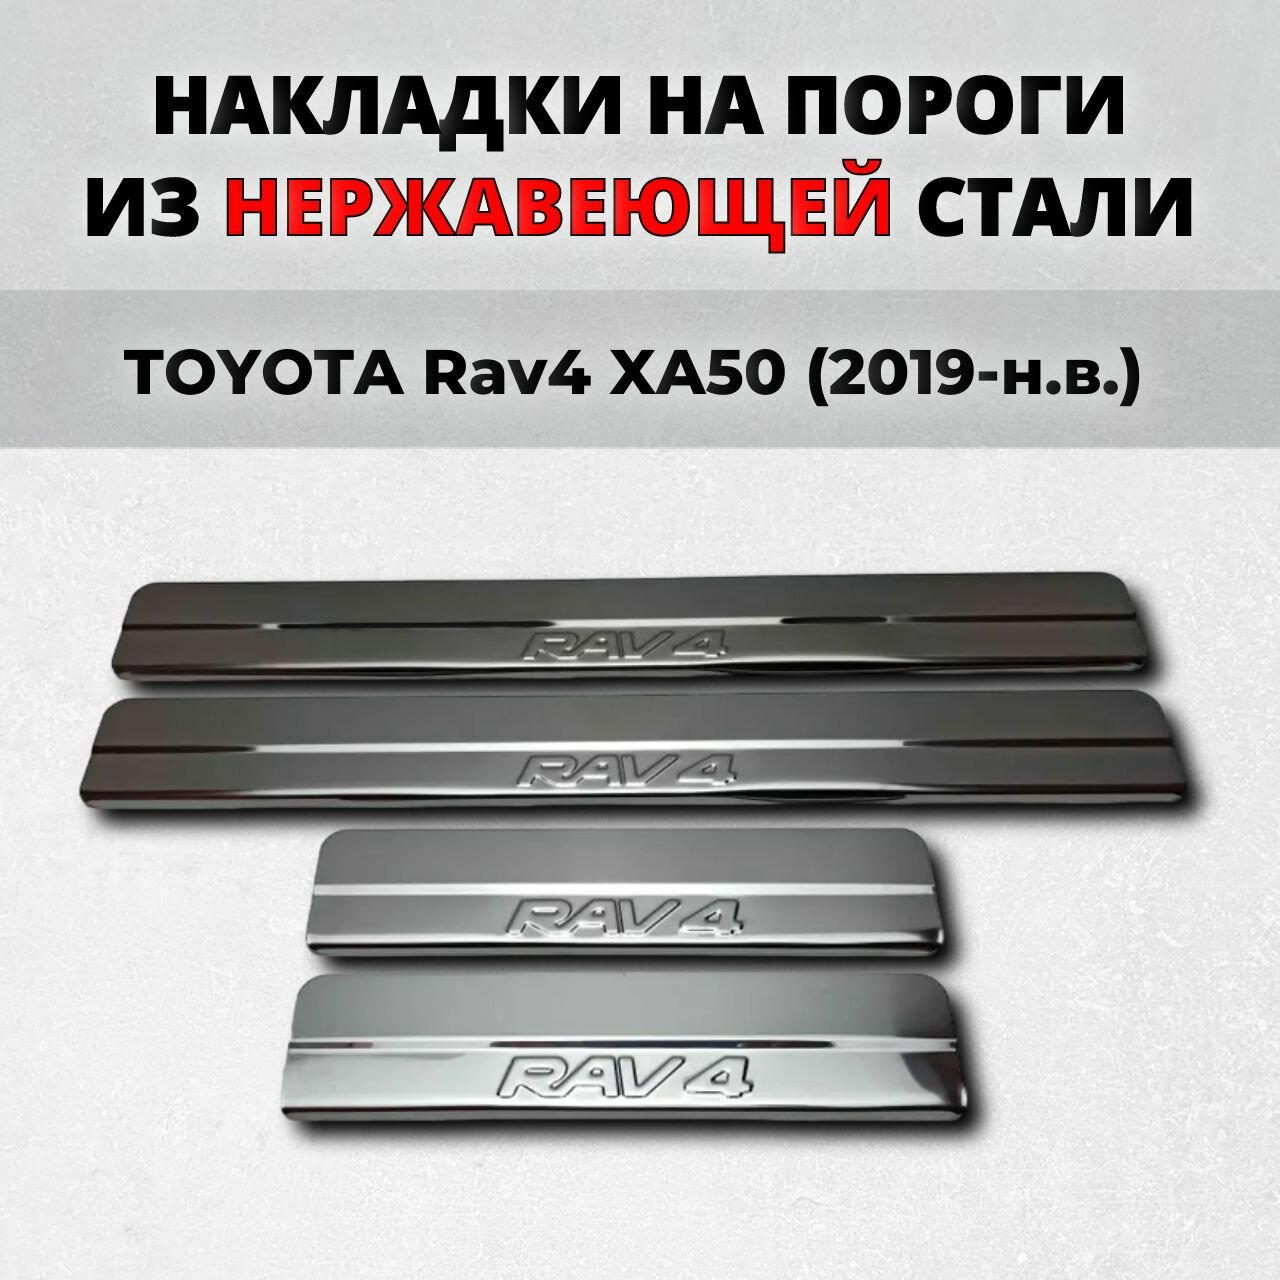 Накладки на пороги Тойота Рав4 ХА50 2019-н. в. из нержавеющей стали TOYOTA Rav4 XA50 rav 4 рав 4